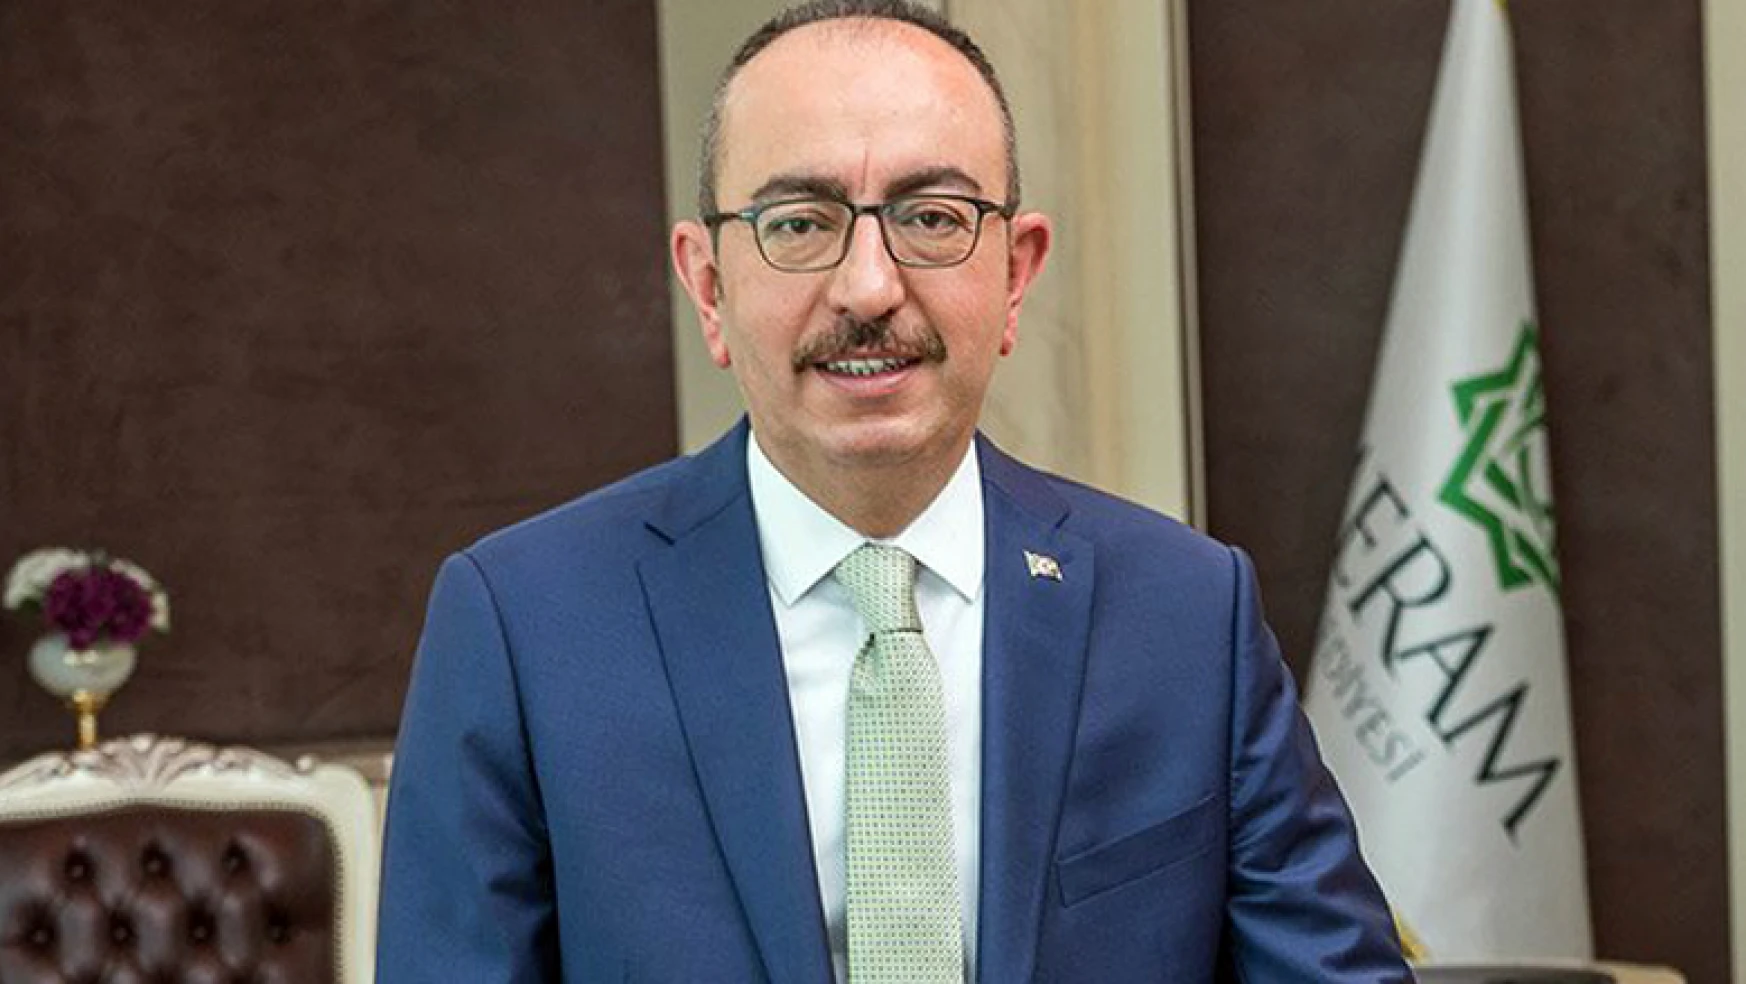 Meram Belediye Başkanı Mustafa KAVUŞ Kimdir? Hayatı, Eğitimi, İşi ve Siyaseti